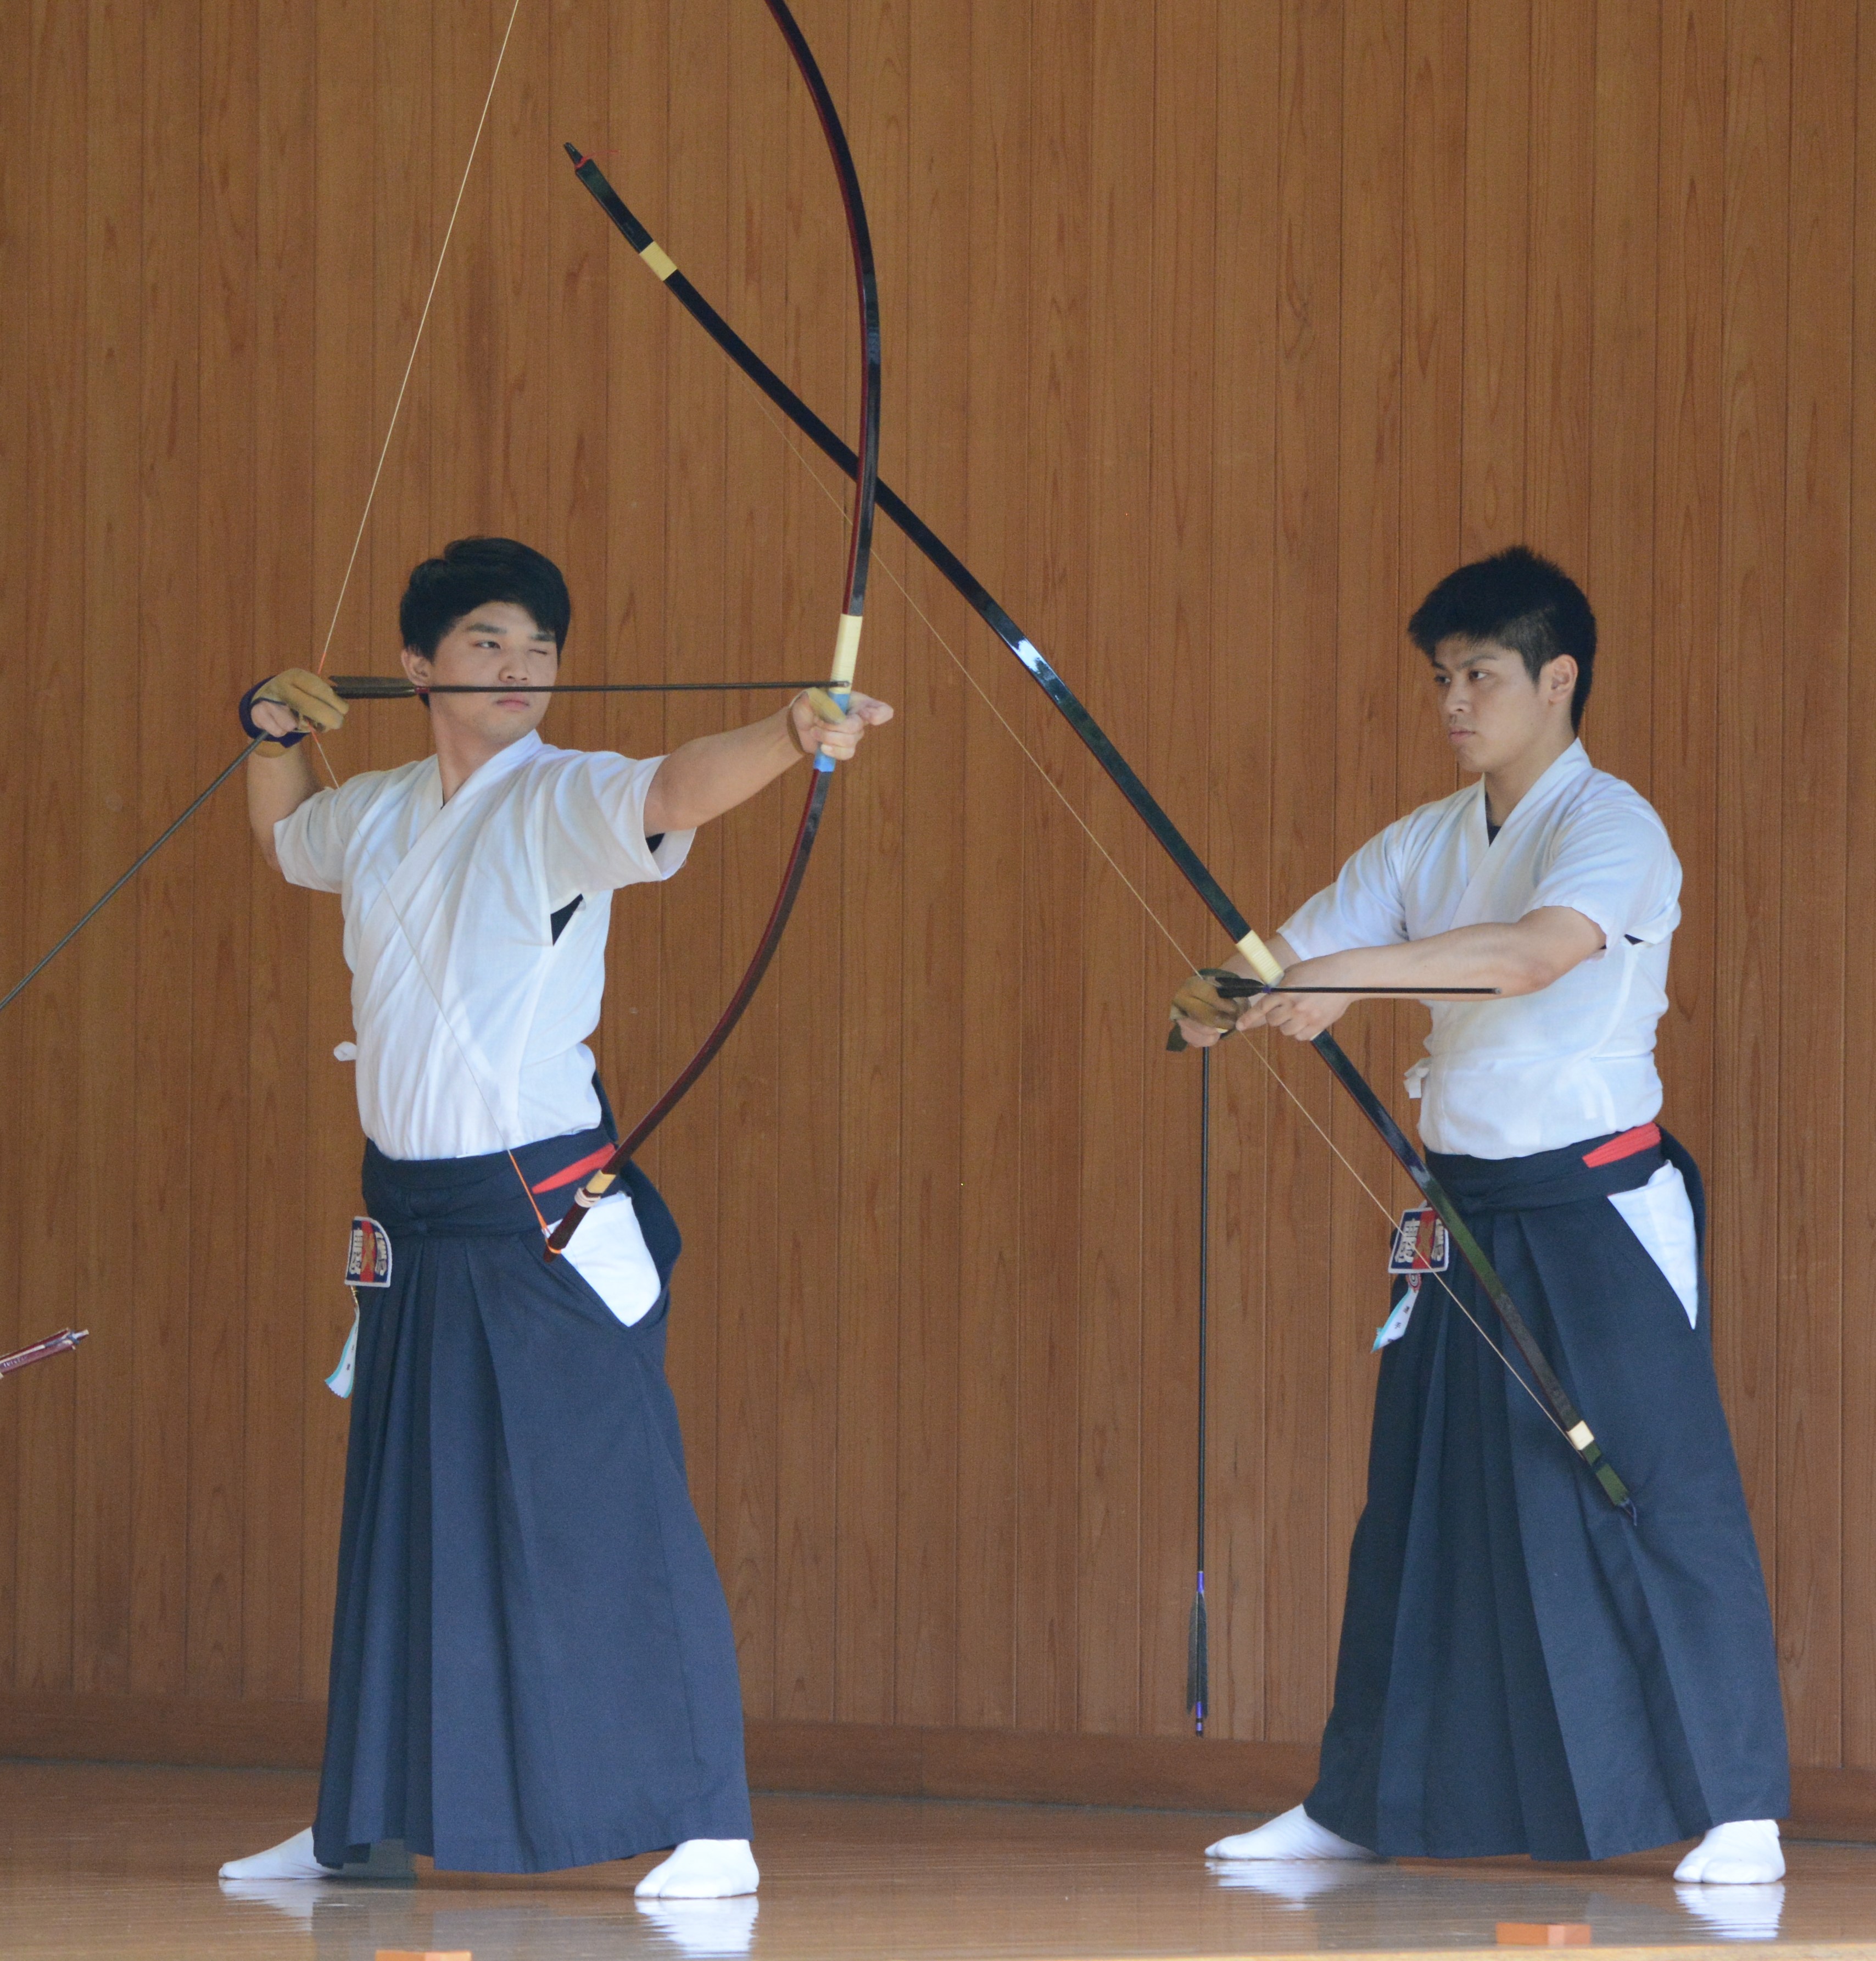 弓道男子 ついに天敵下す 全国３位に輝く 全国大学弓道選抜大会 Keio Sports Press